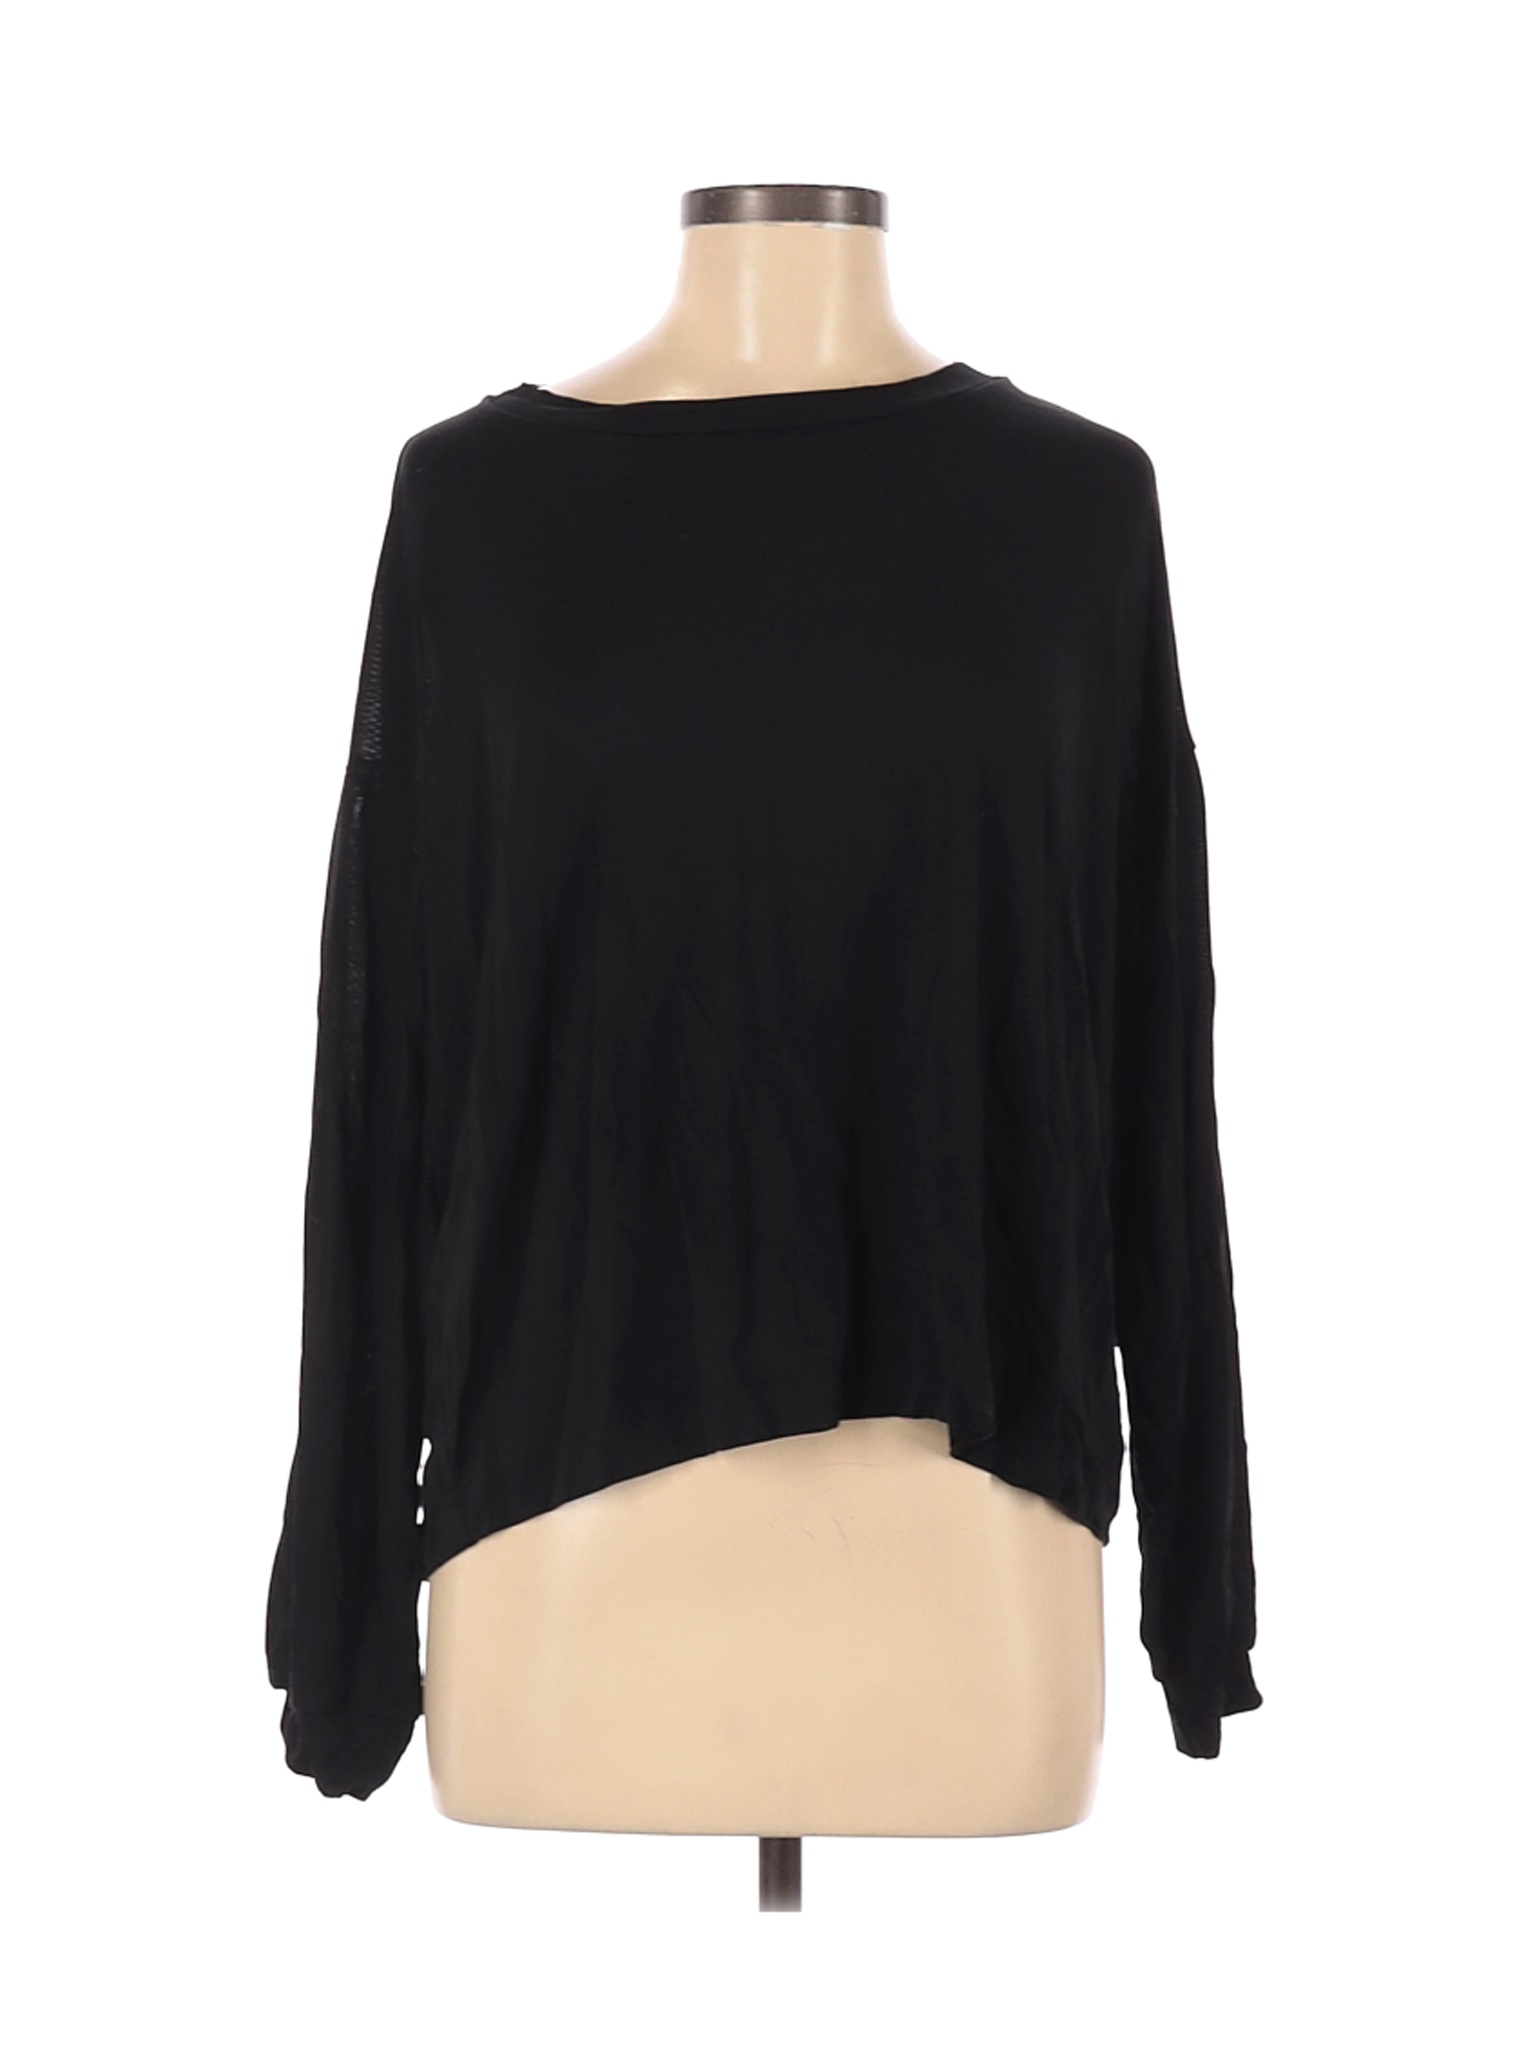 Zara Women Black Long Sleeve T-Shirt M | eBay